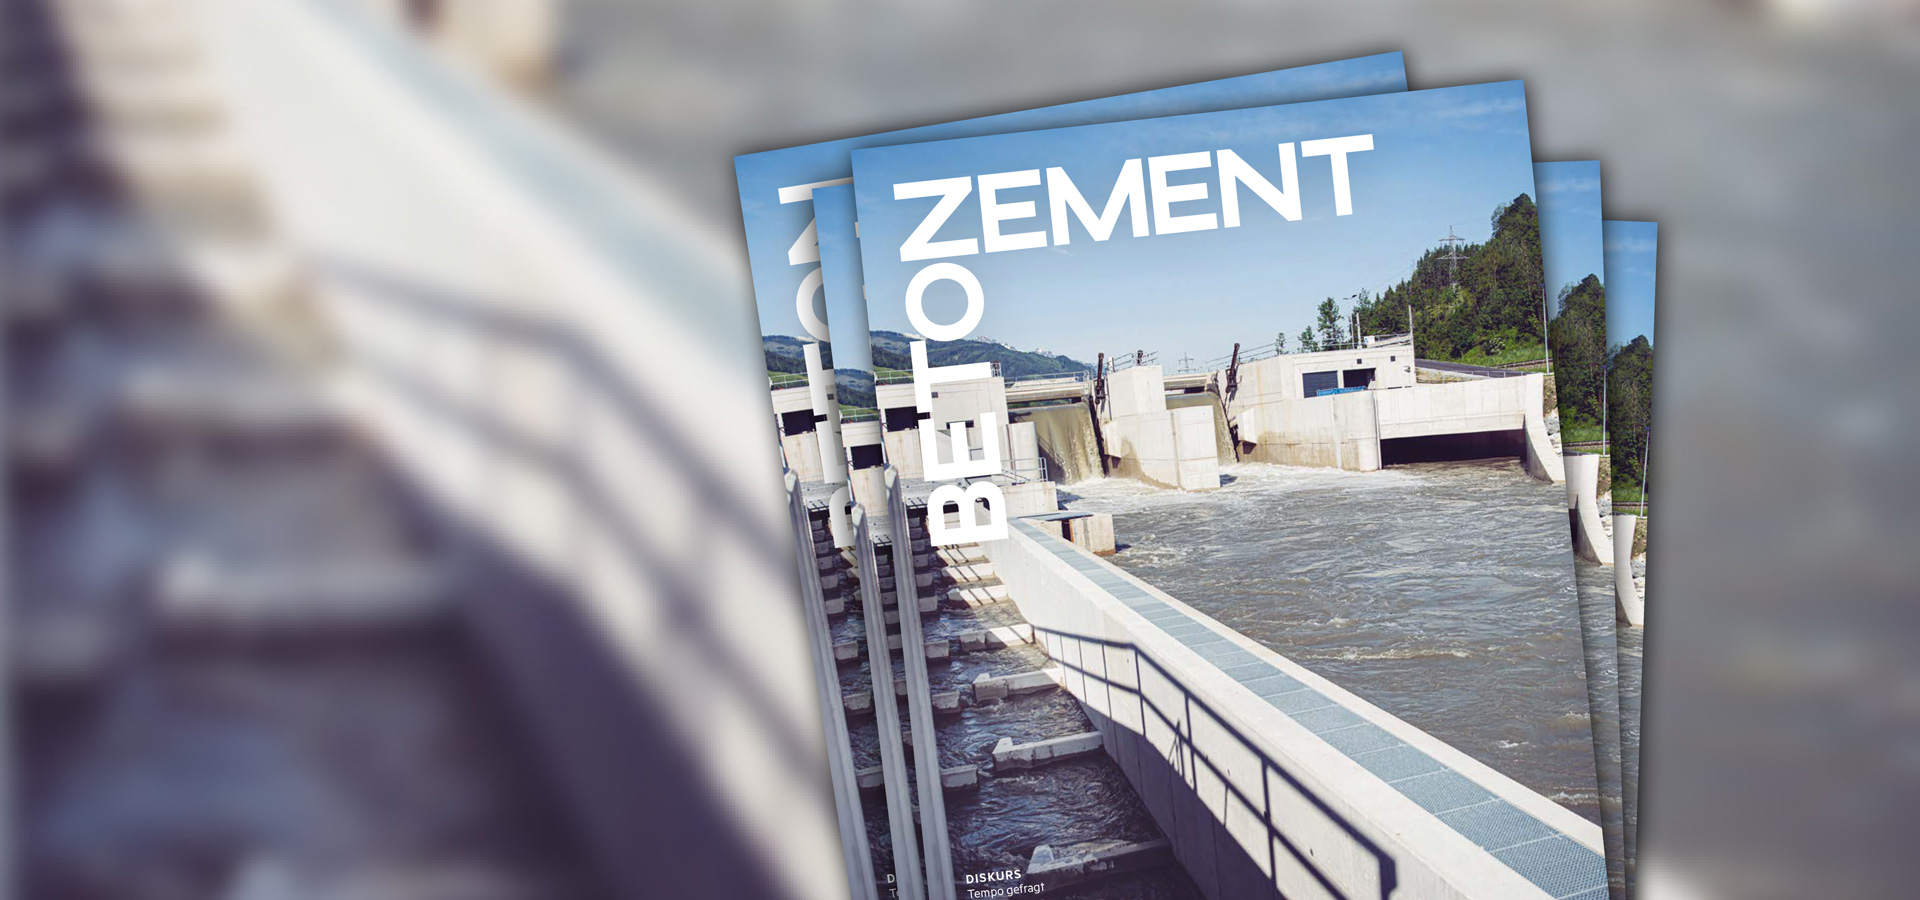 Zement+Beton 1_23: INFRASTRUKTUR